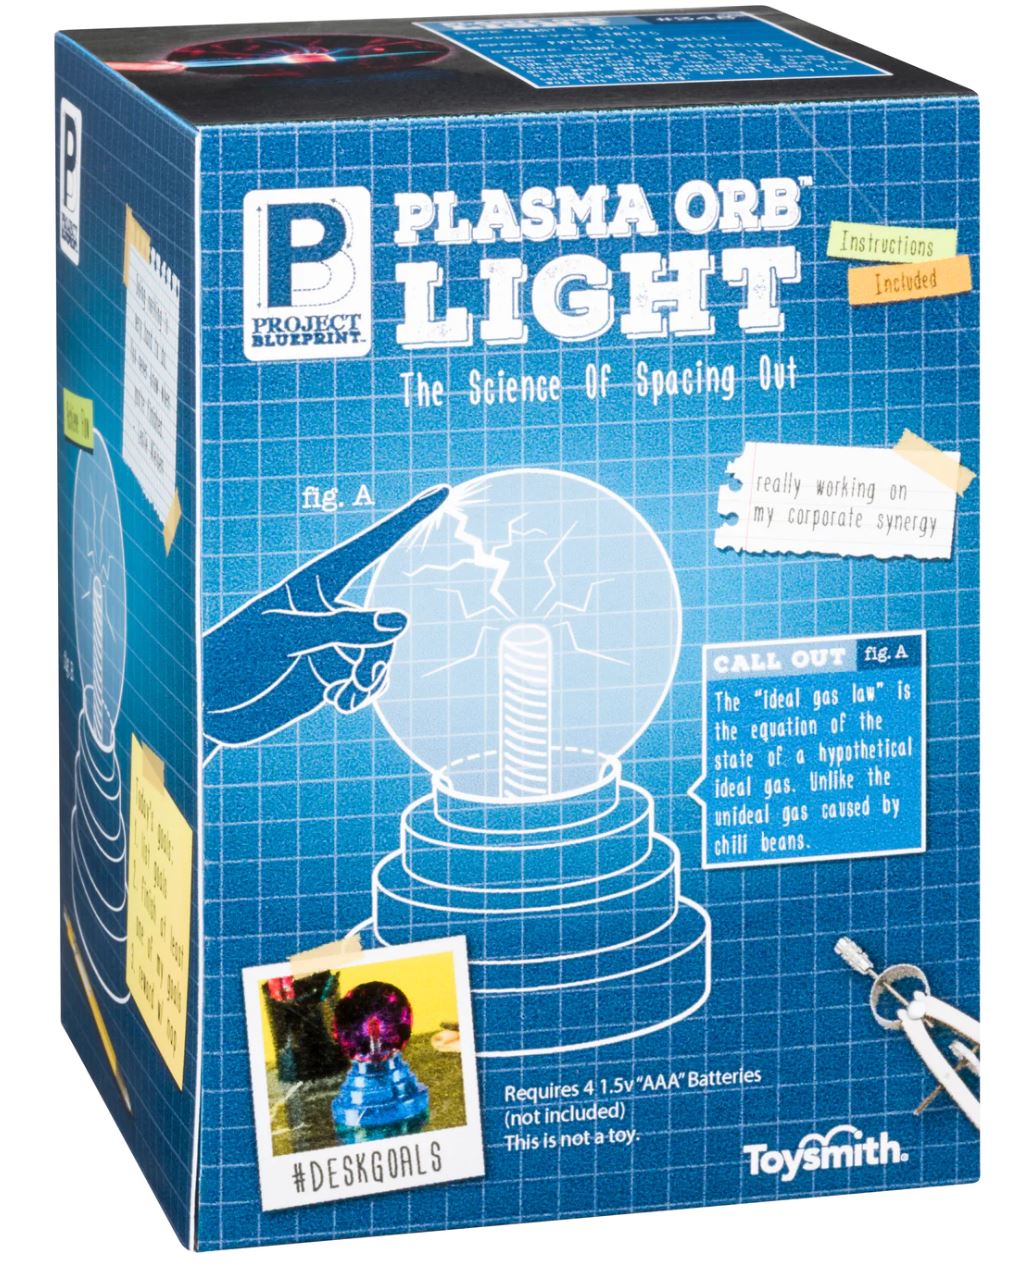 Plasma ORB light